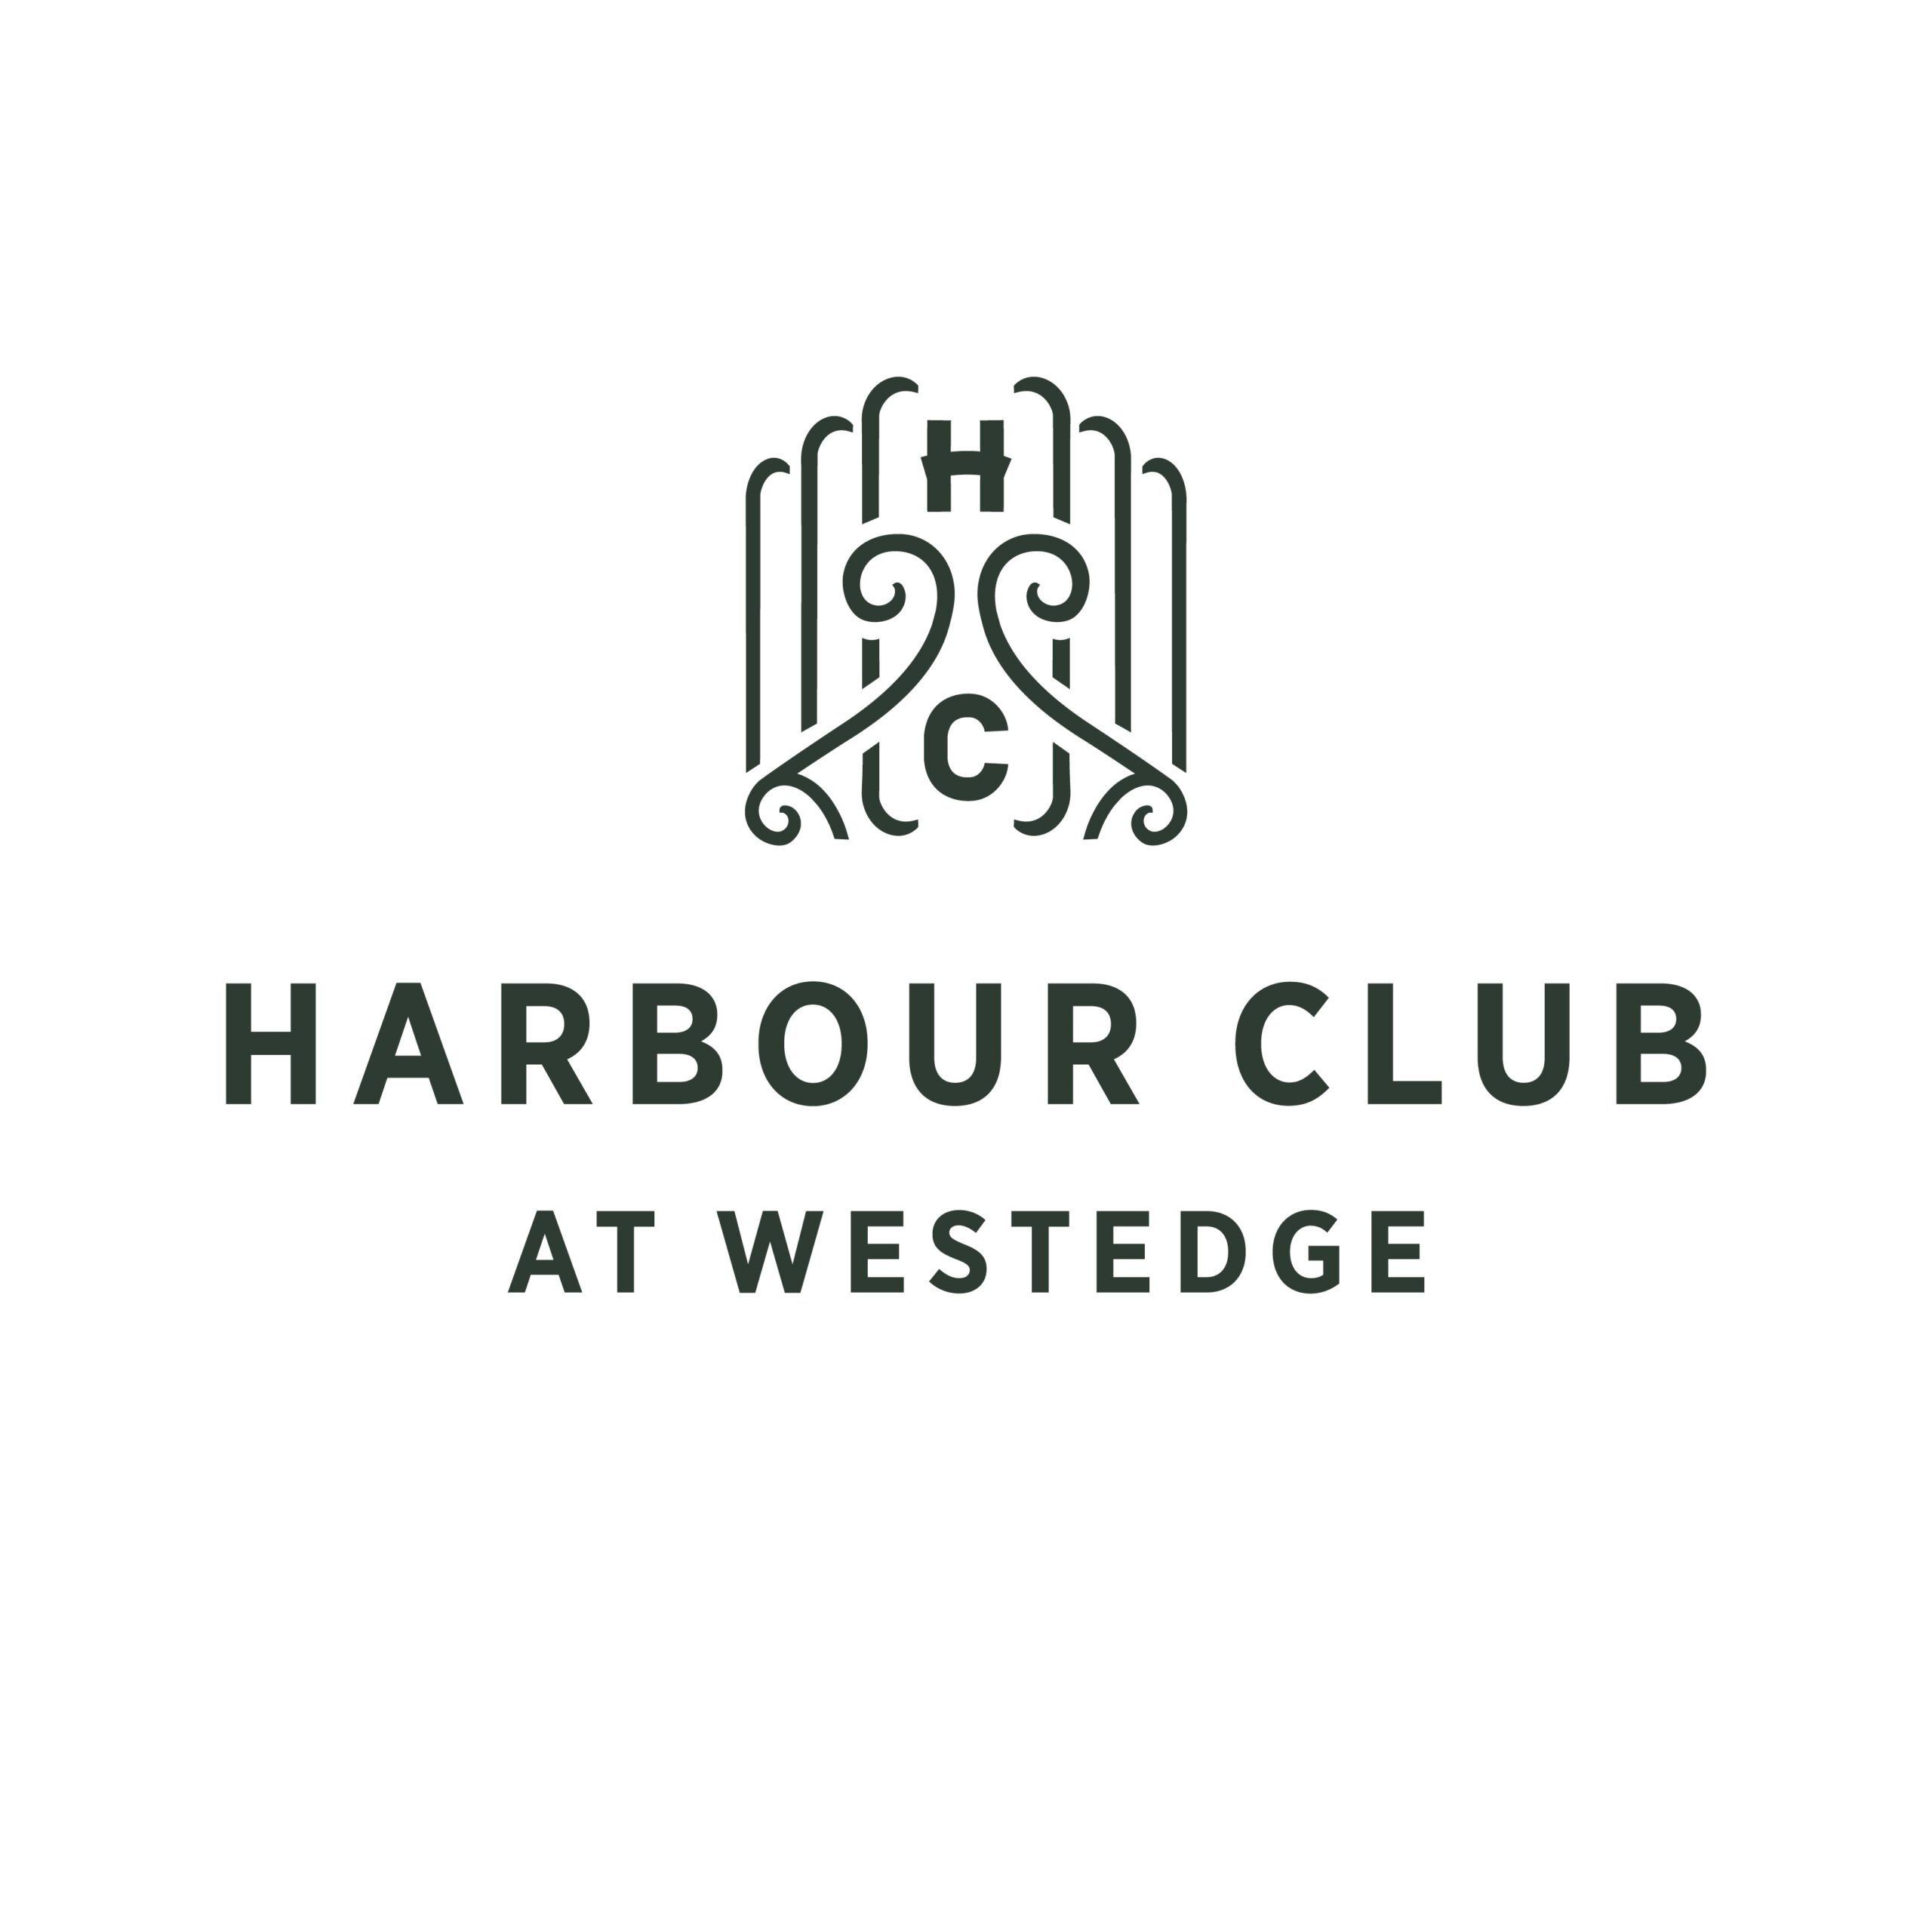 HarbourClub_PrimaryLogo